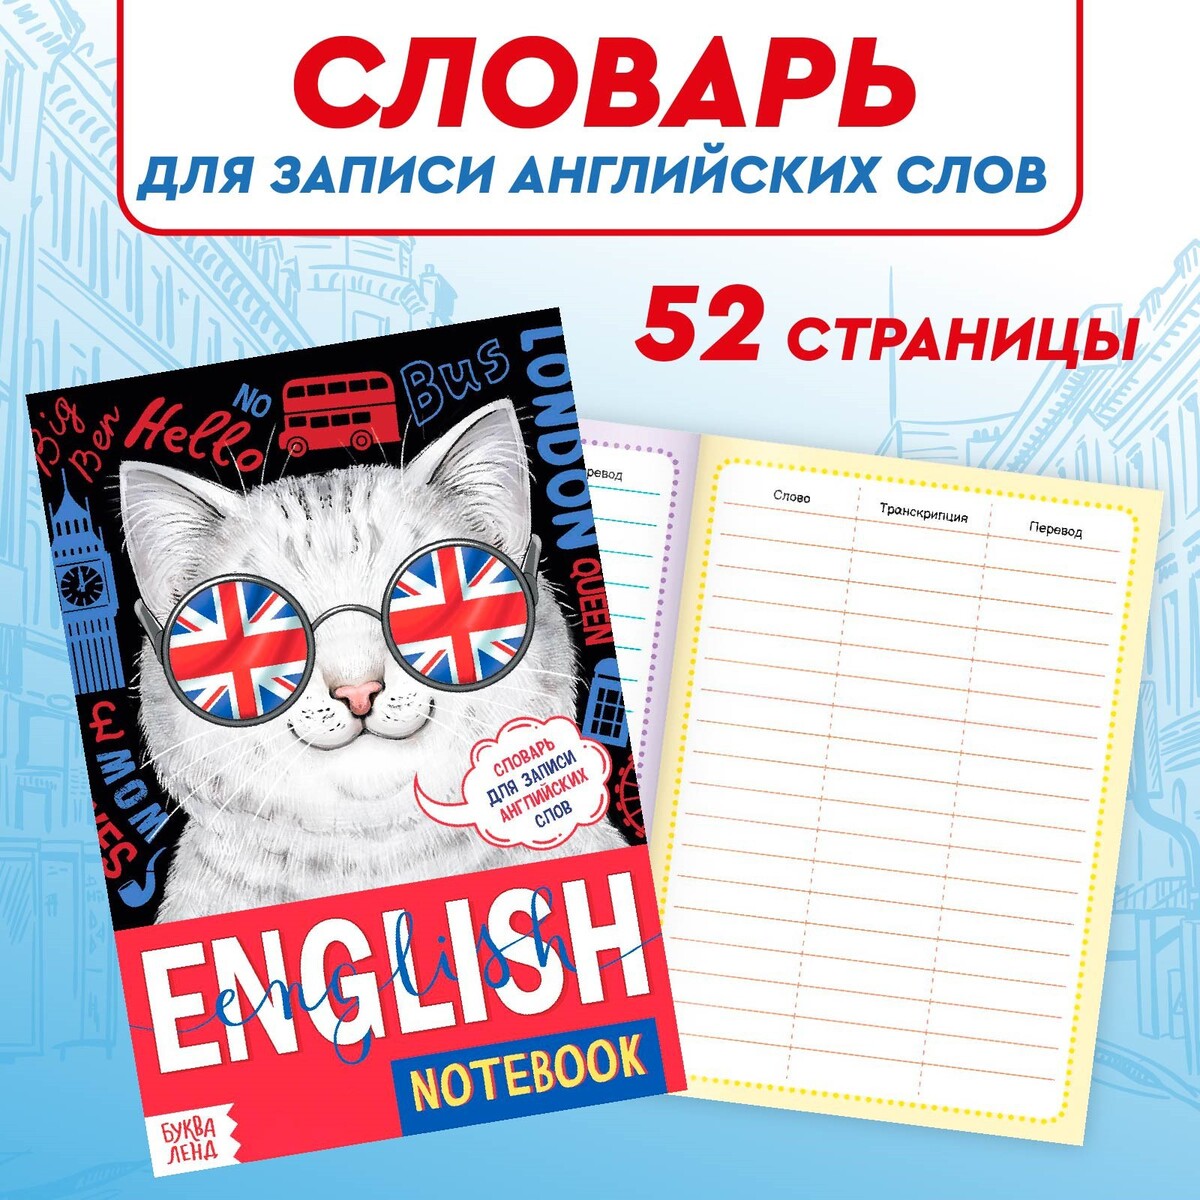 Словарь для записи английских слов english notebook.